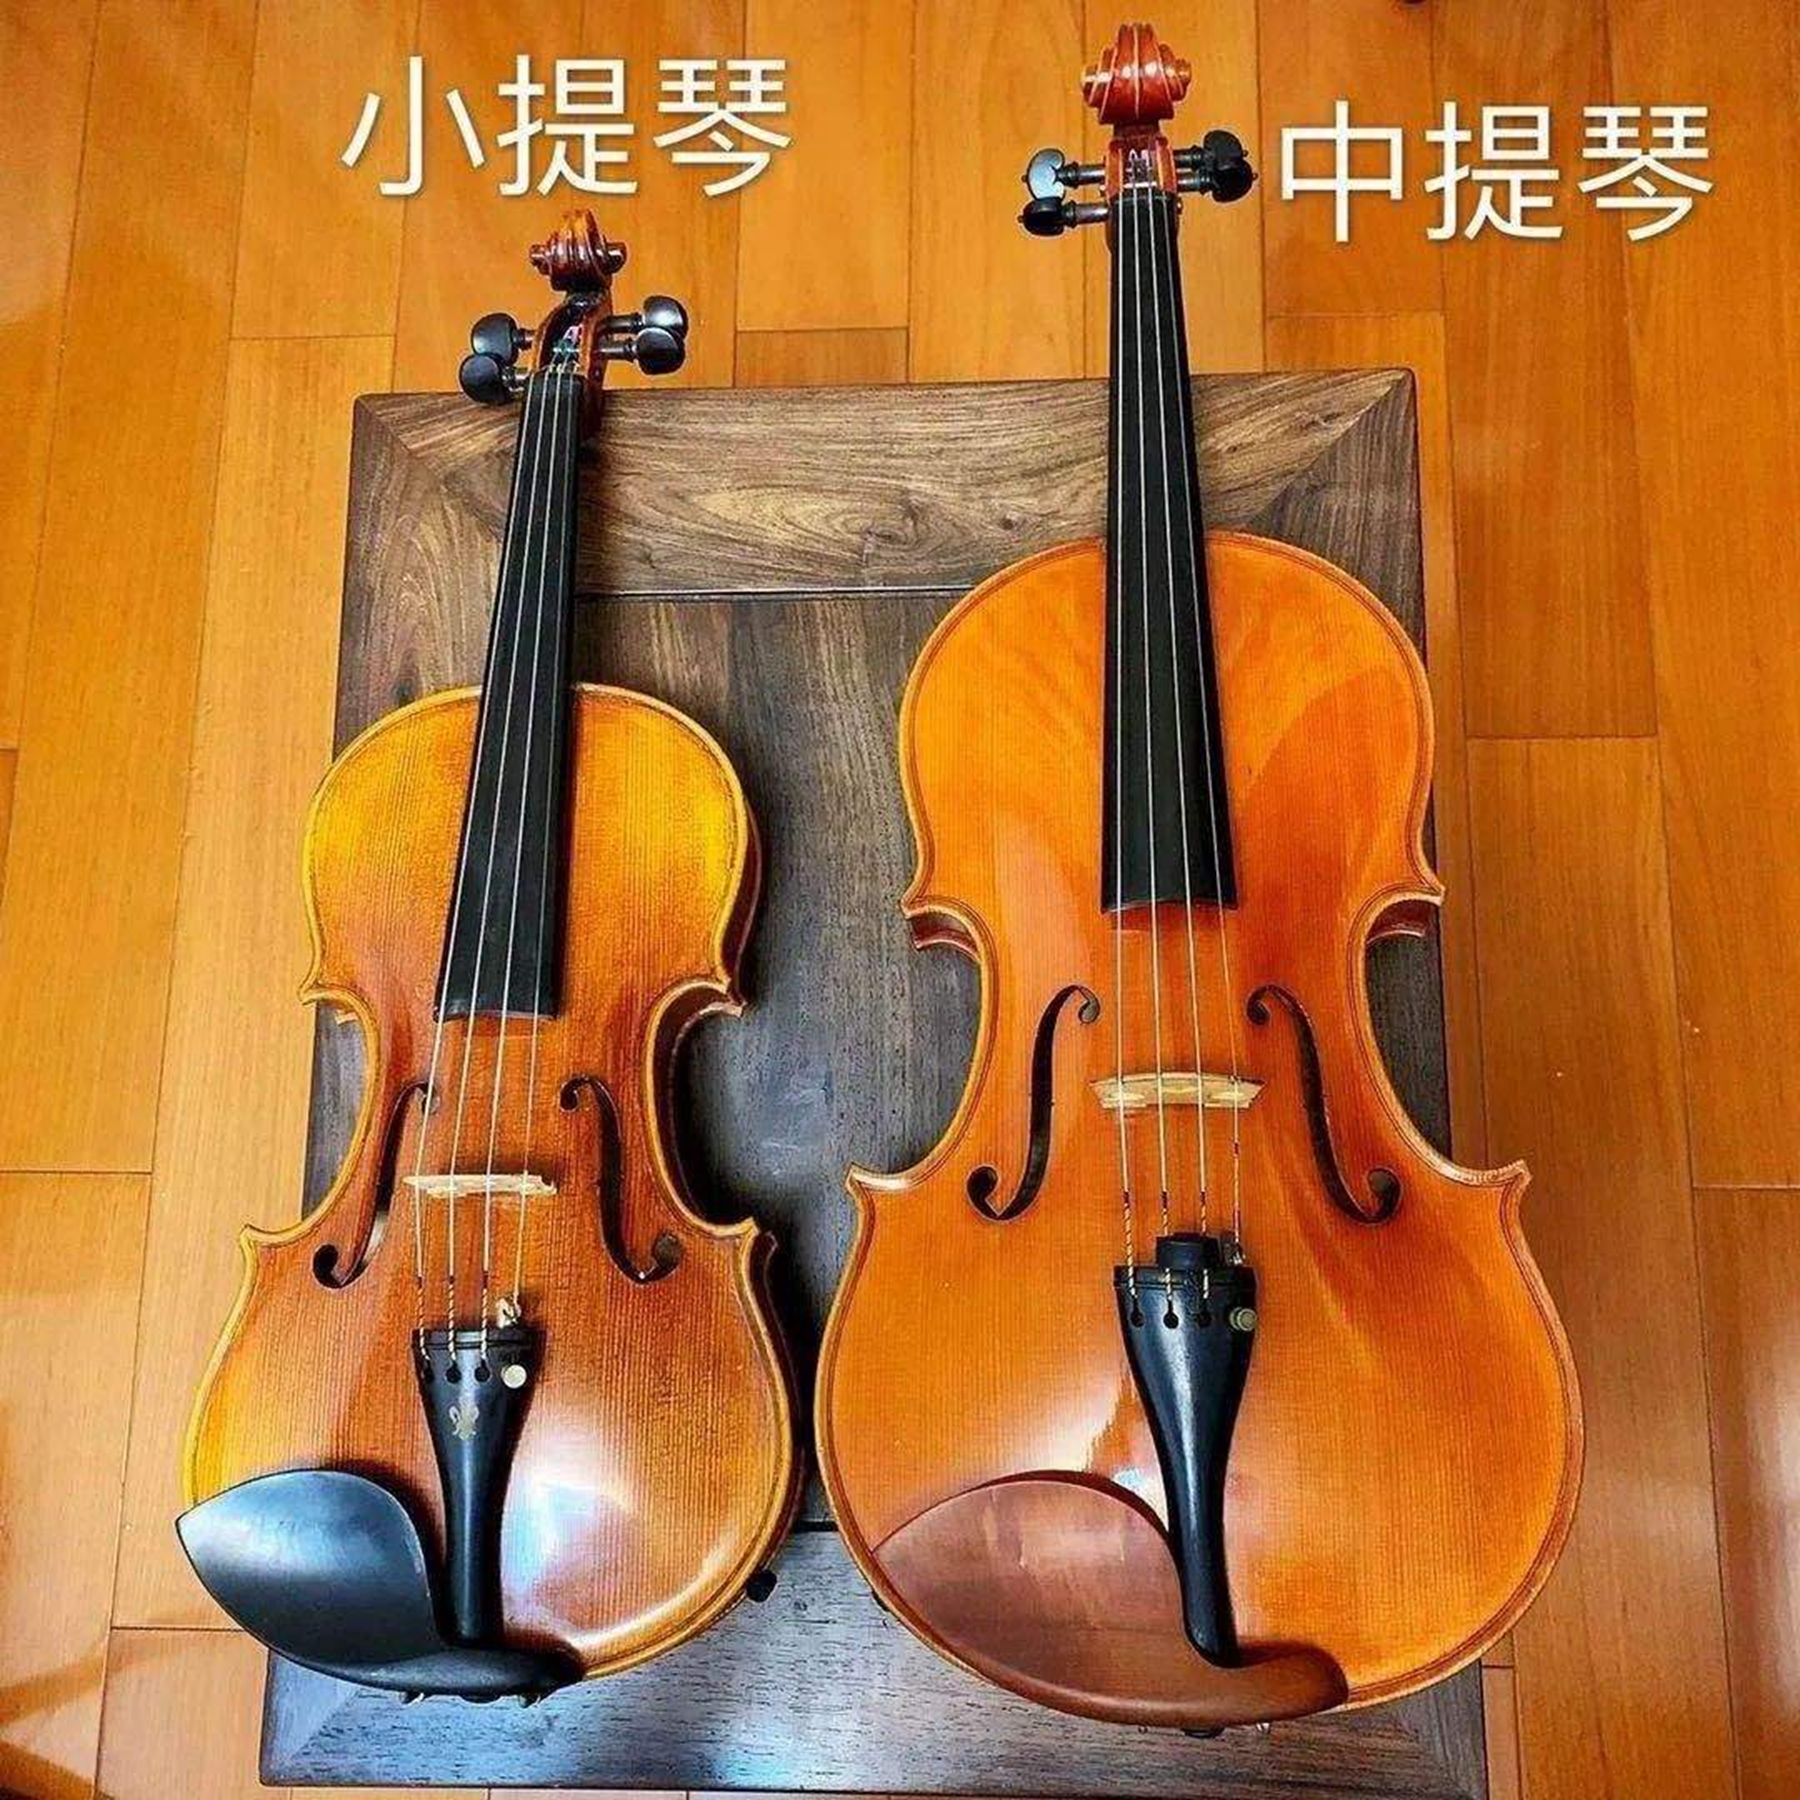 中提琴和小提琴的区别?小提琴可以自学吗?